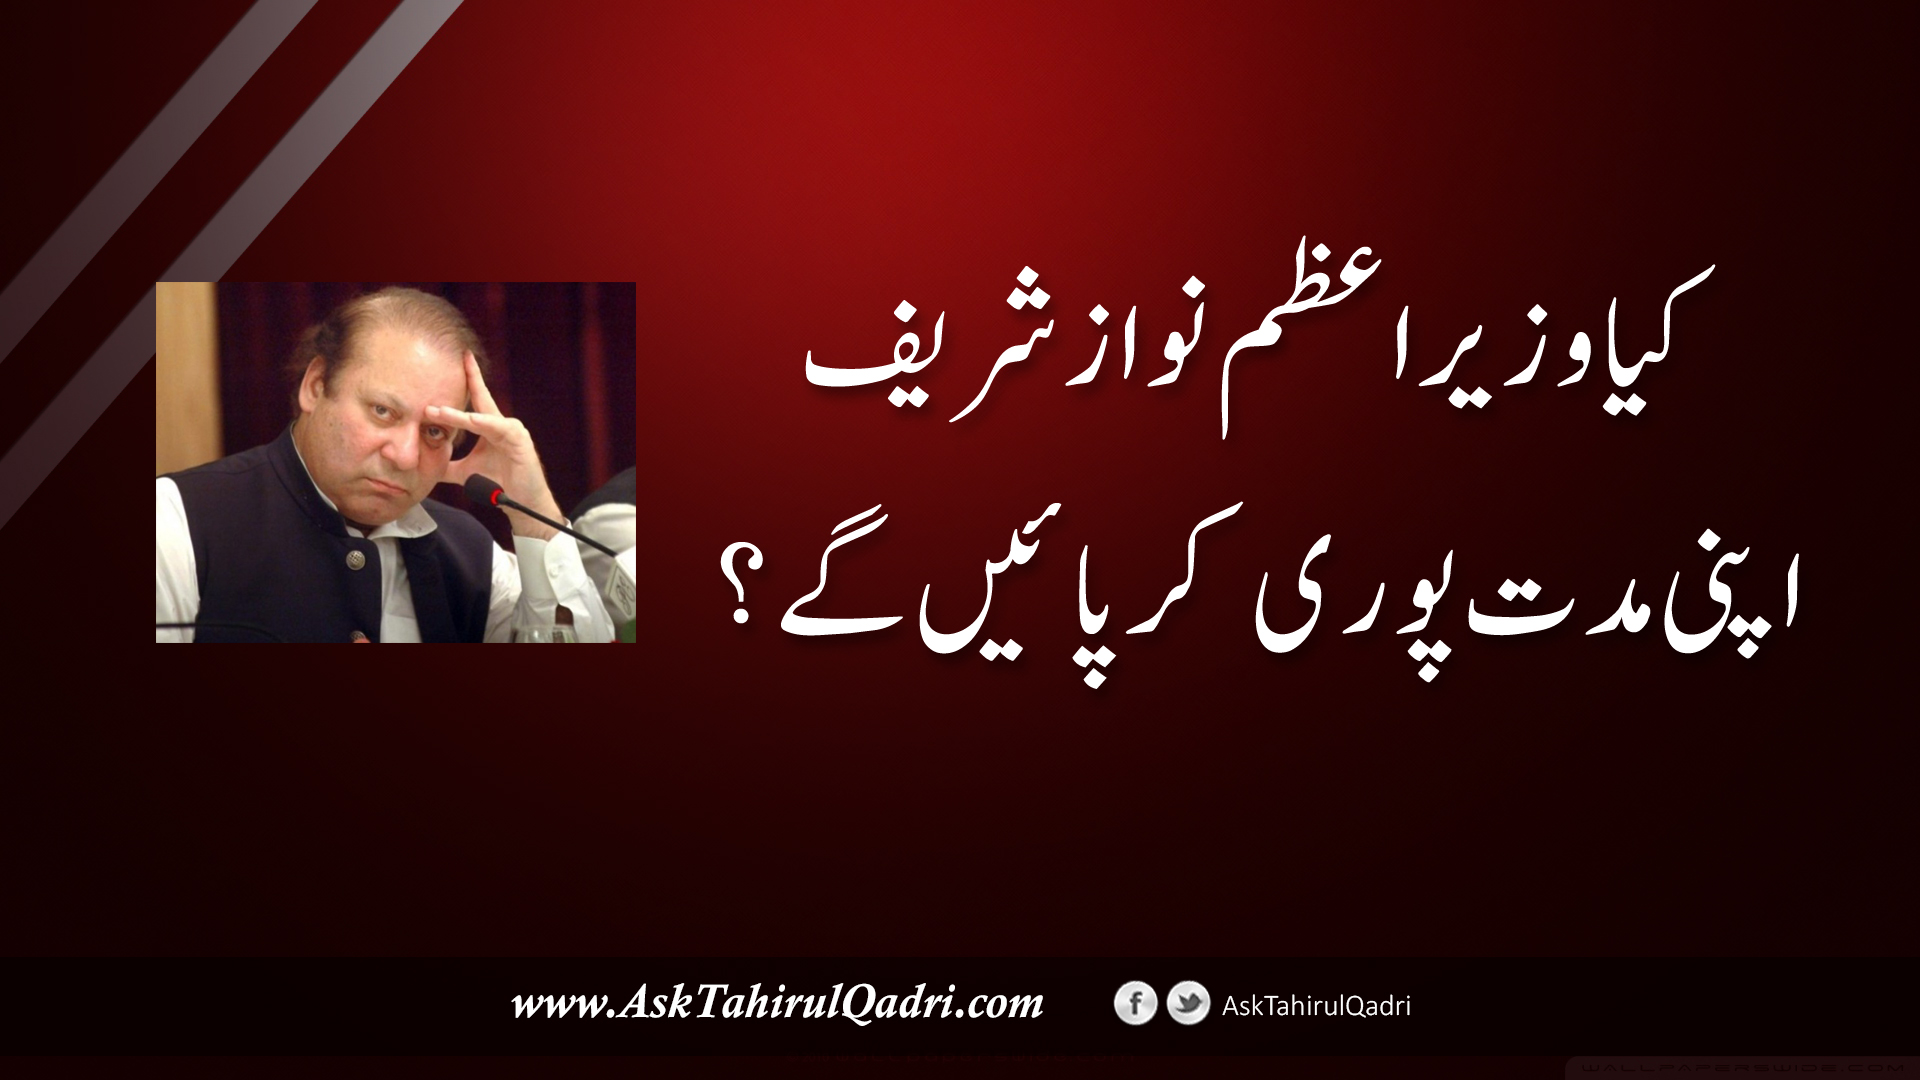 kya wazeer e azam Nawaz Sharif apni muddat poori kar payen ge?